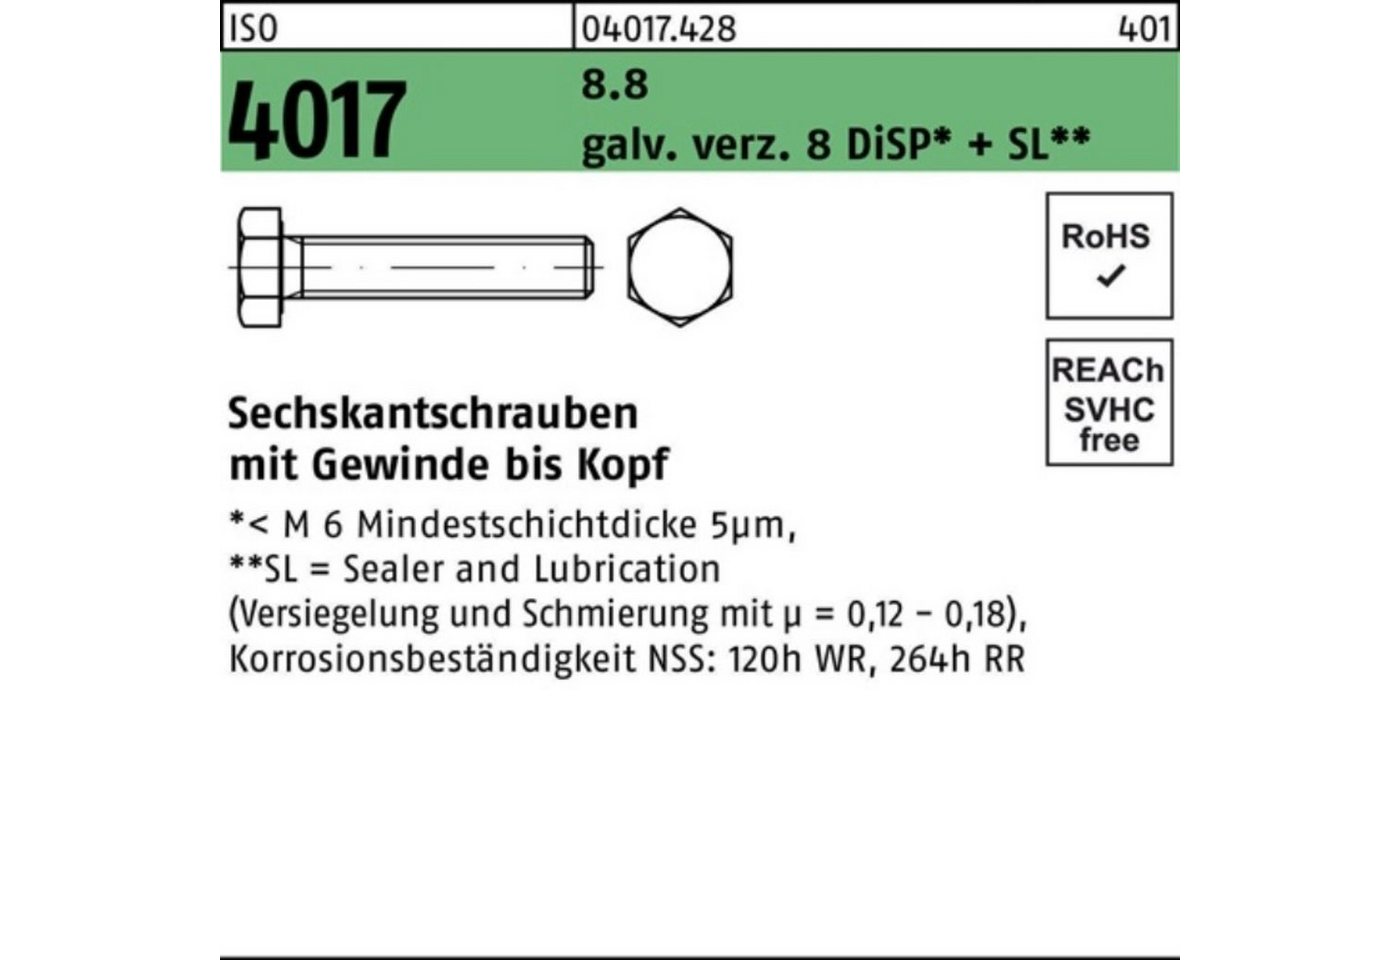 Bufab Sechskantschraube 200er Pack Sechskantschraube ISO 4017 VG M8x 80 8.8 galv.verz. 8 DiSP+ von Bufab